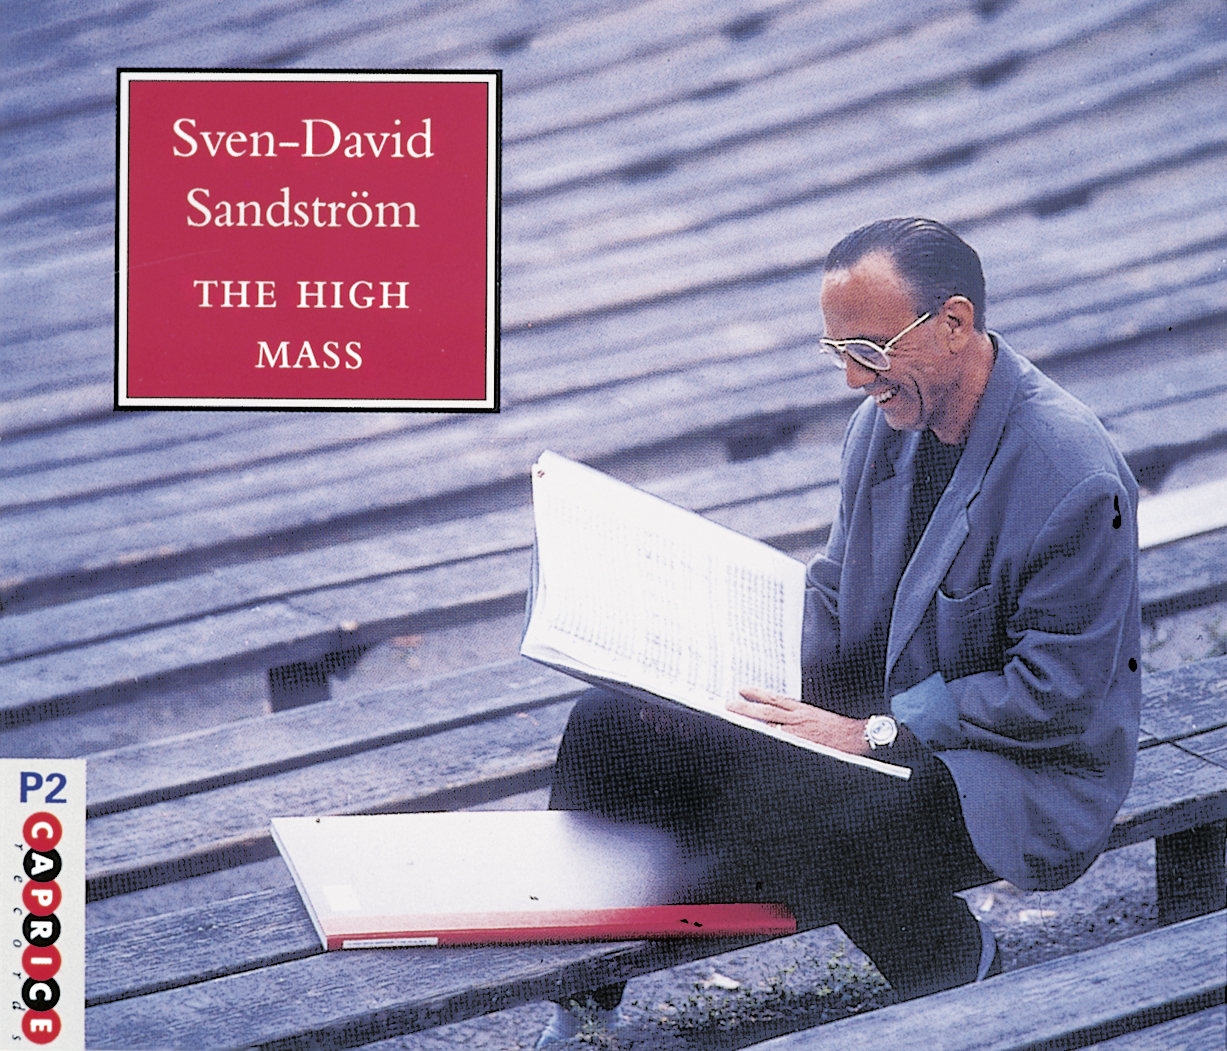 Sven-David Sandström The High Mass